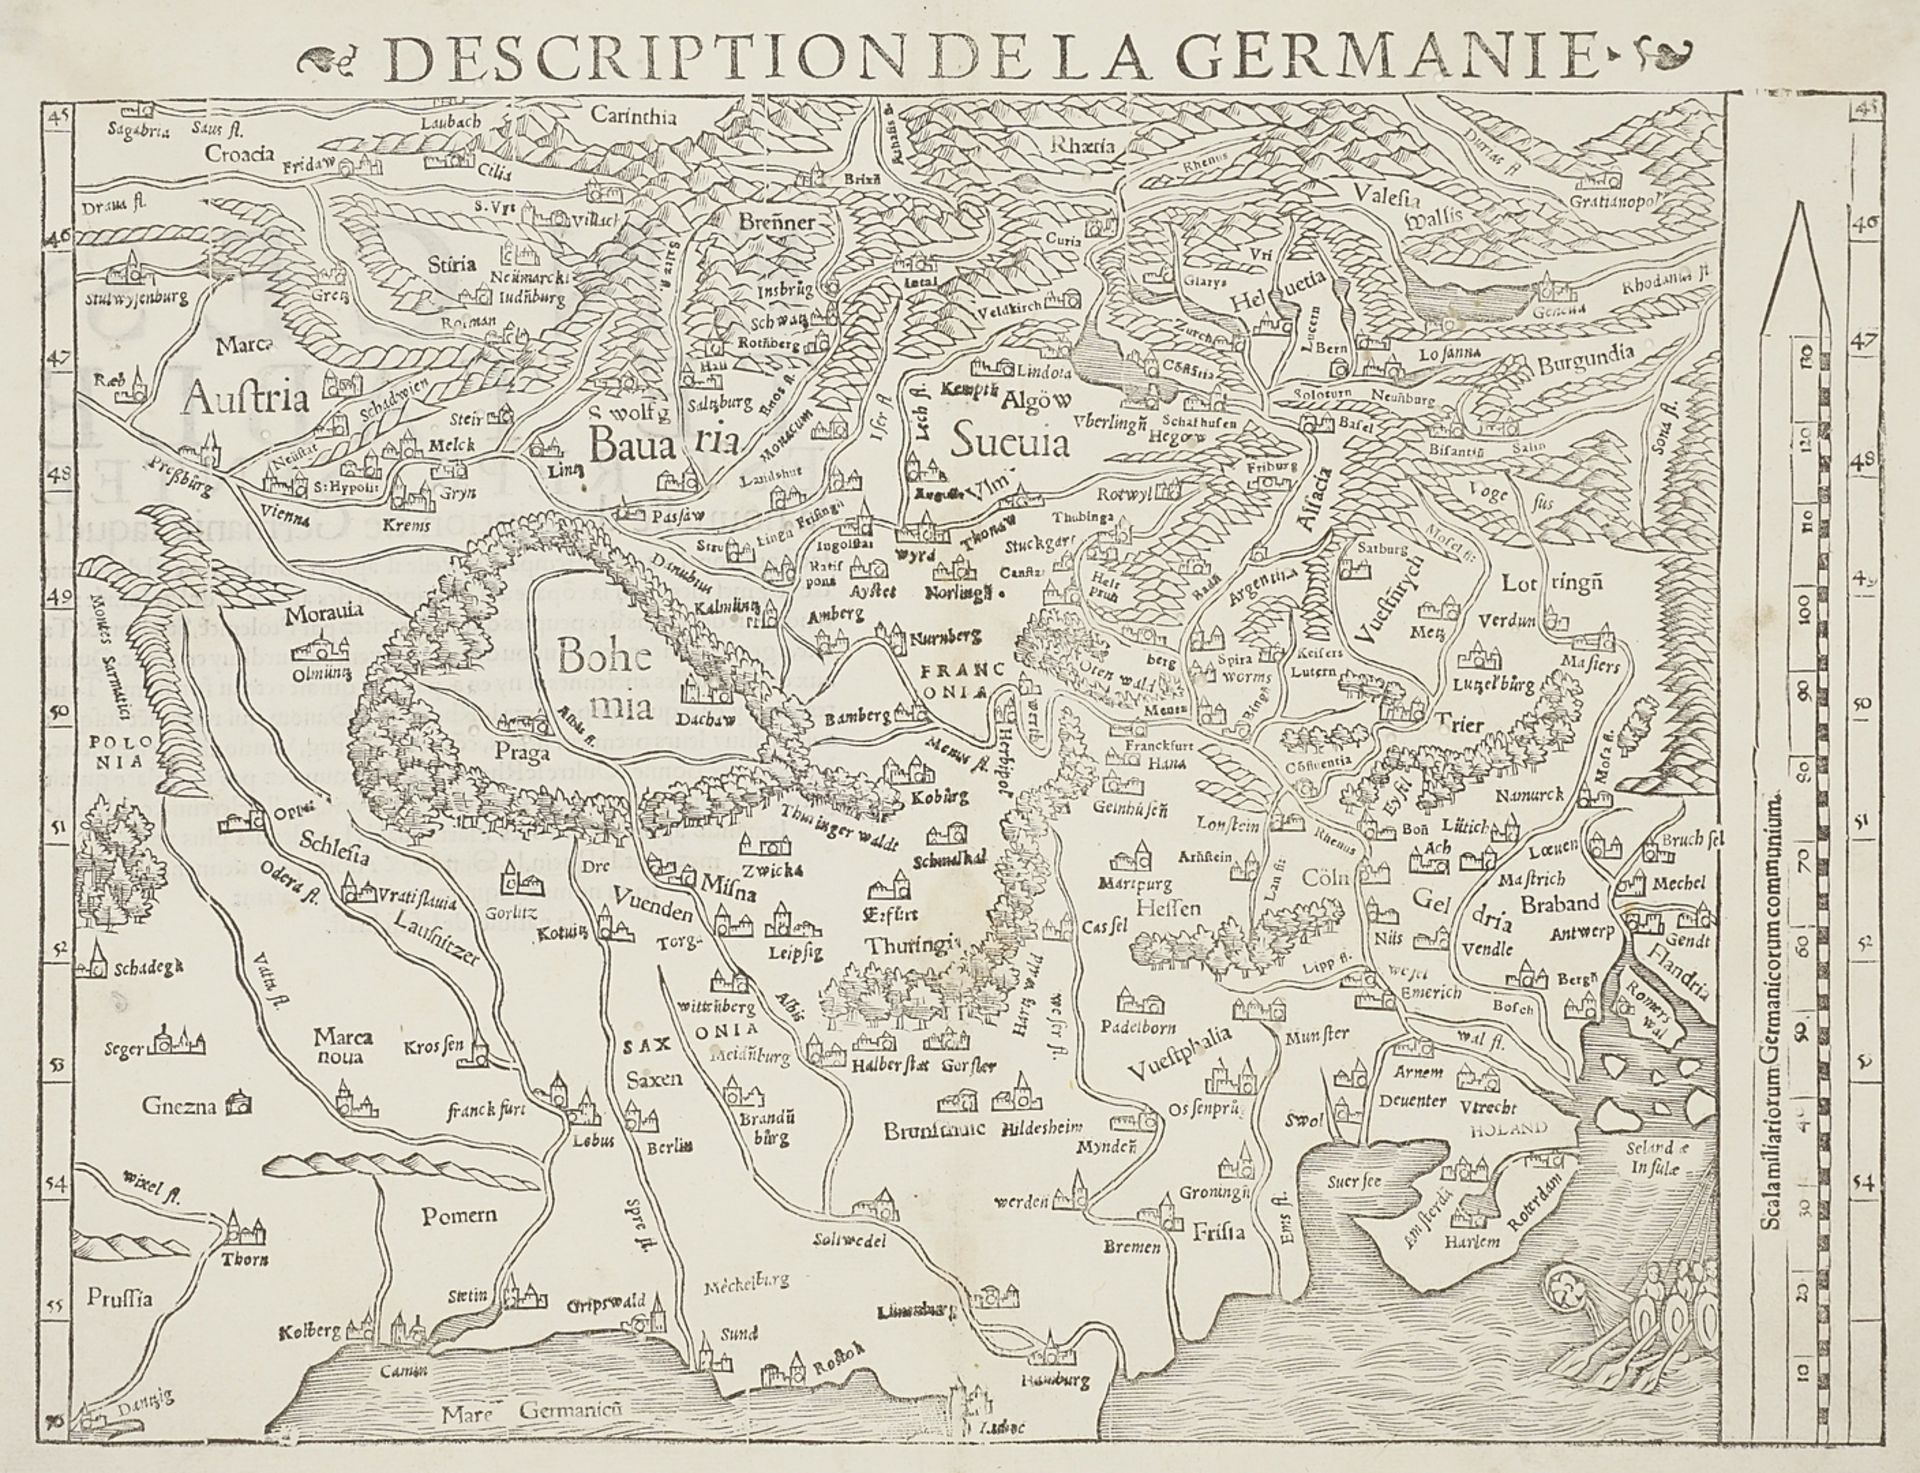 Sebastian Münster,  "Description de la Germanie" (Deutschlandkarte)